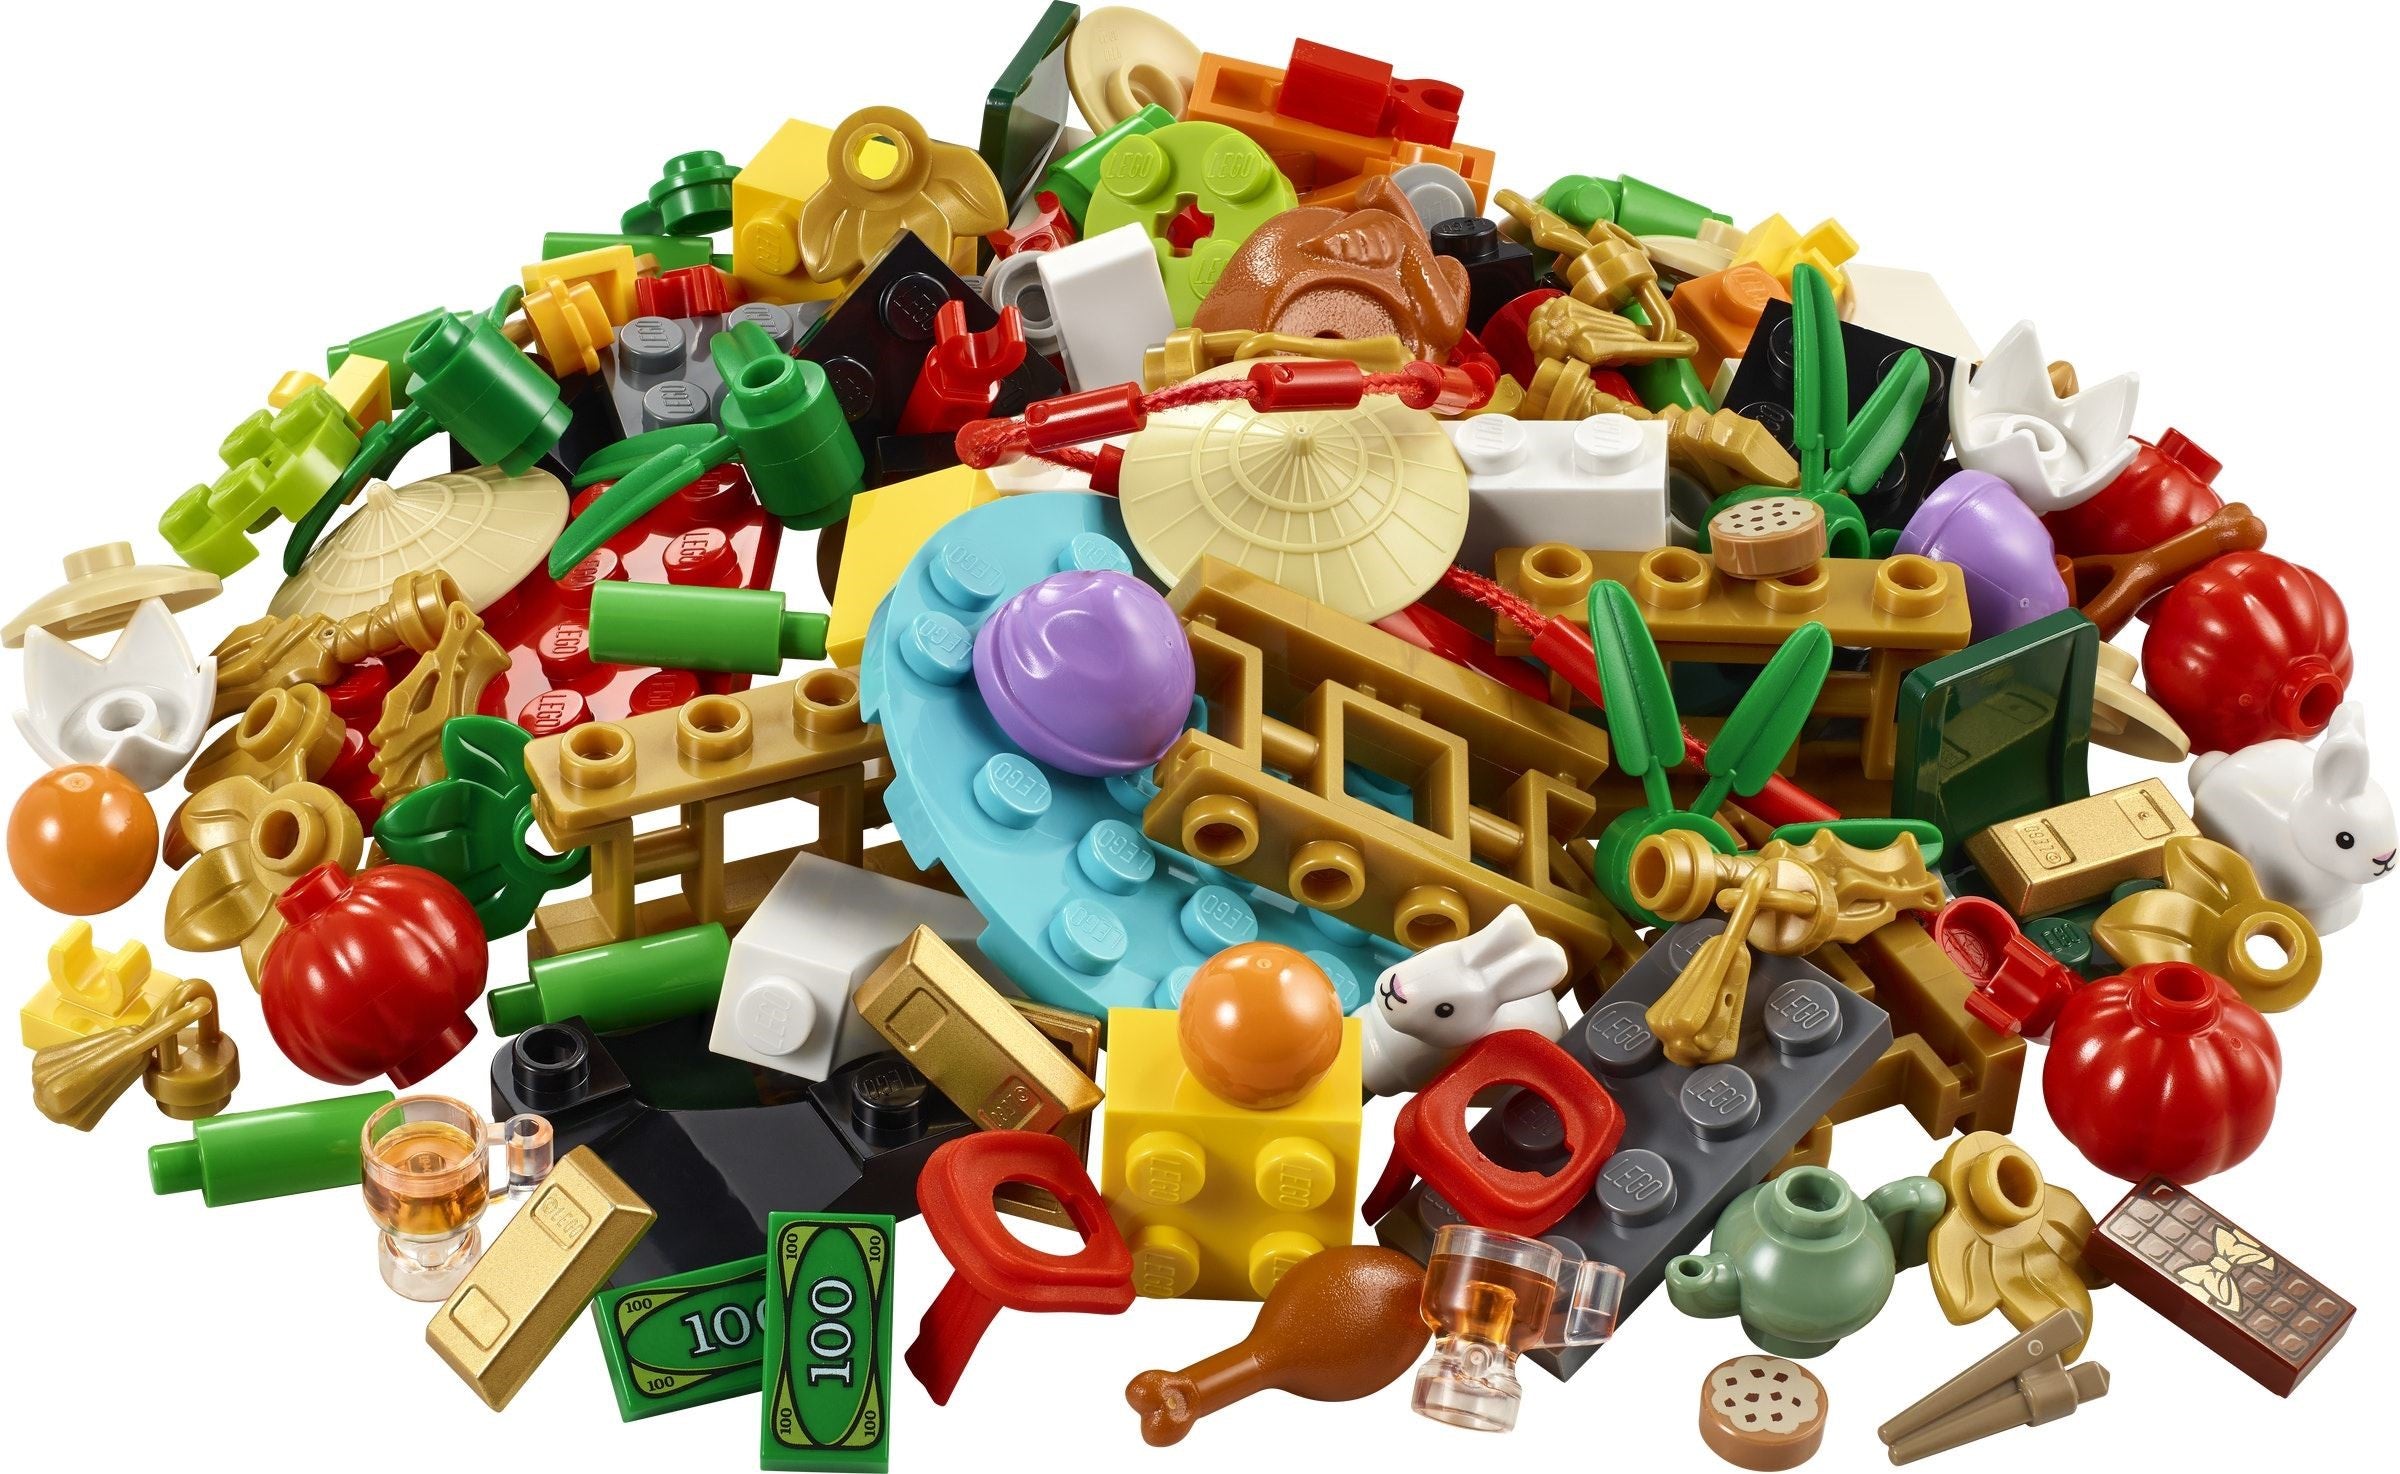 Lego 40605 - Lunar New Year VIP Add-On Pack